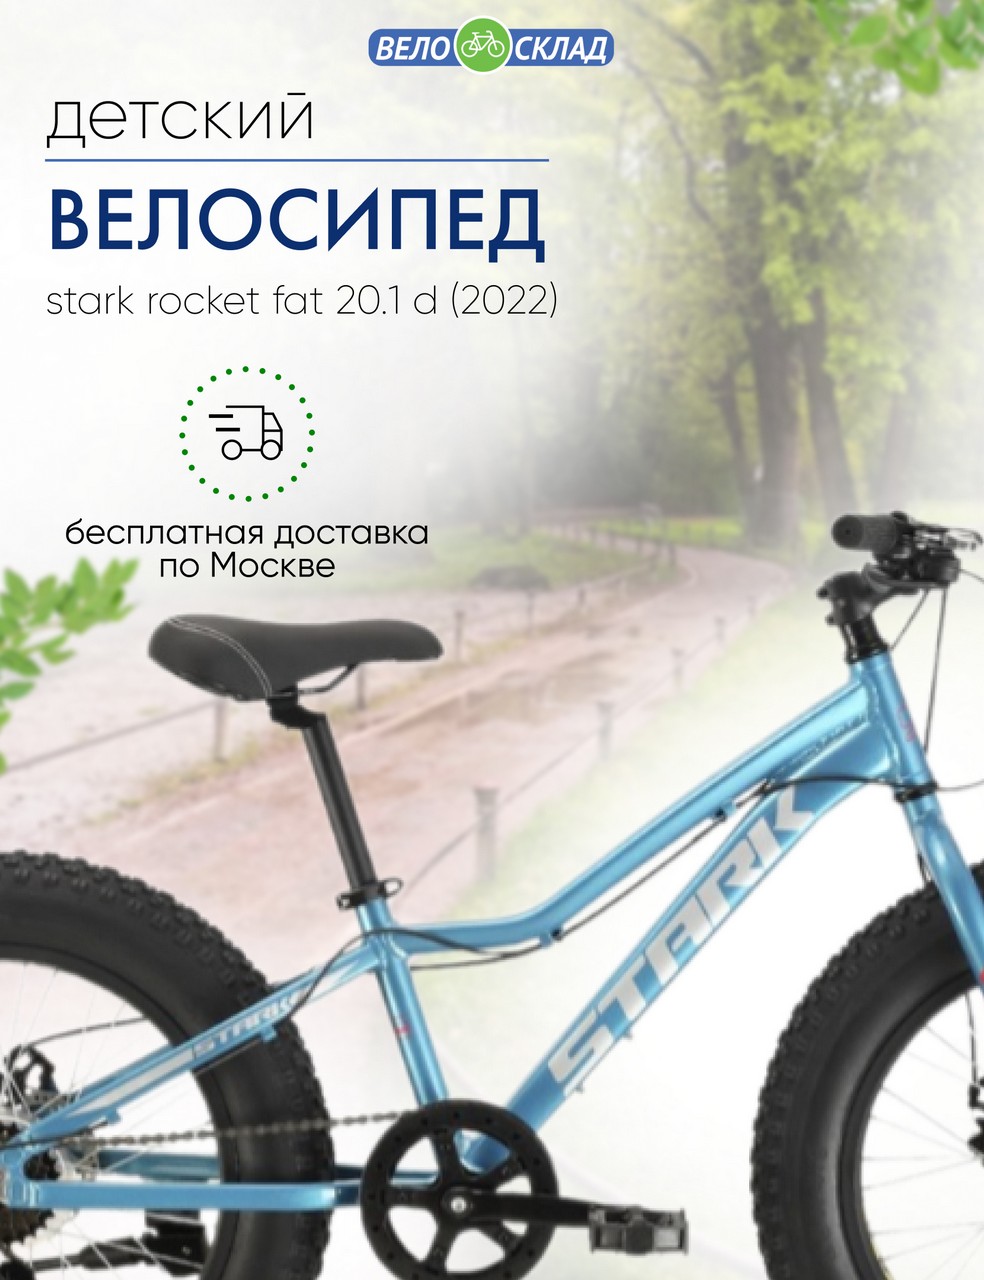 фото Детский велосипед stark rocket fat 20.1 d, год 2022, цвет голубой-белый, ростовка 11